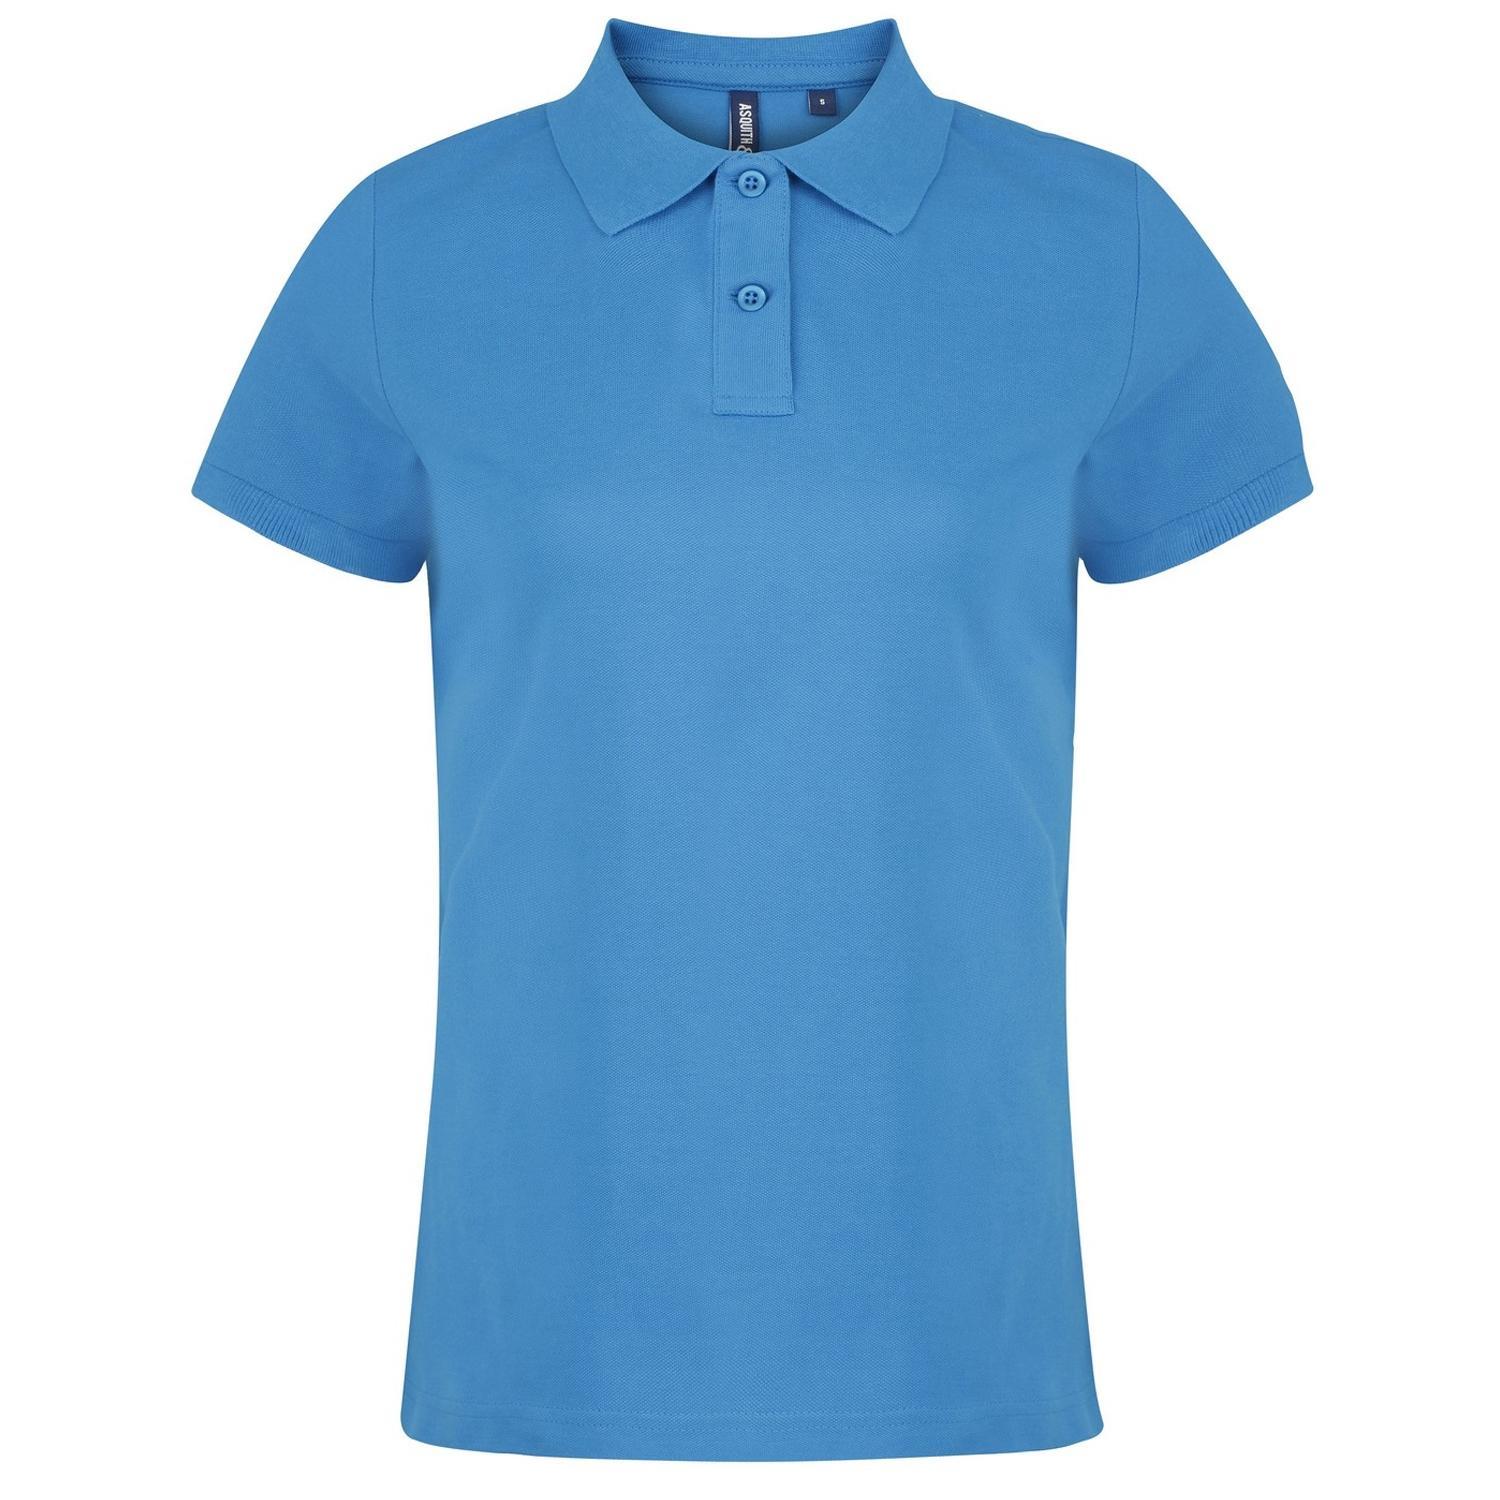 Asquith & Fox Womens/Ladies Plain Short Sleeve Polo Shirt (Sapphire) (M)